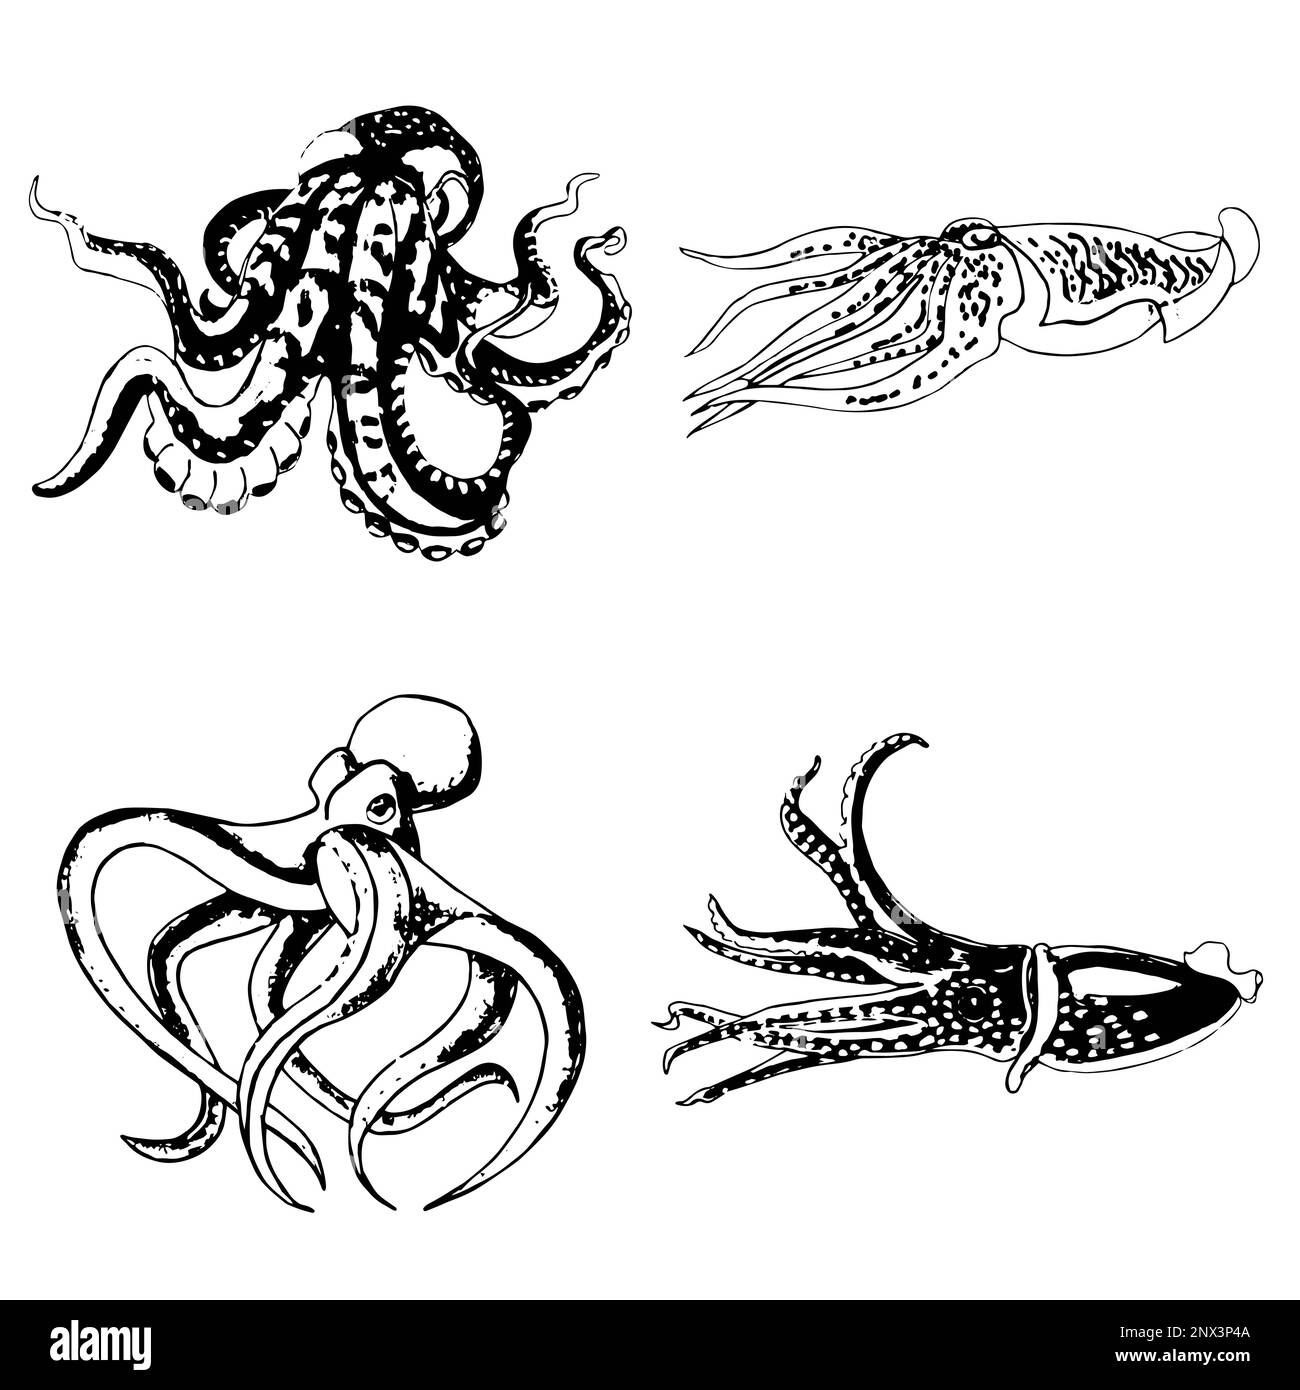 Ensemble de poulpes et de calmars monochromes. Illustration JPEG animaux marins. Banque D'Images